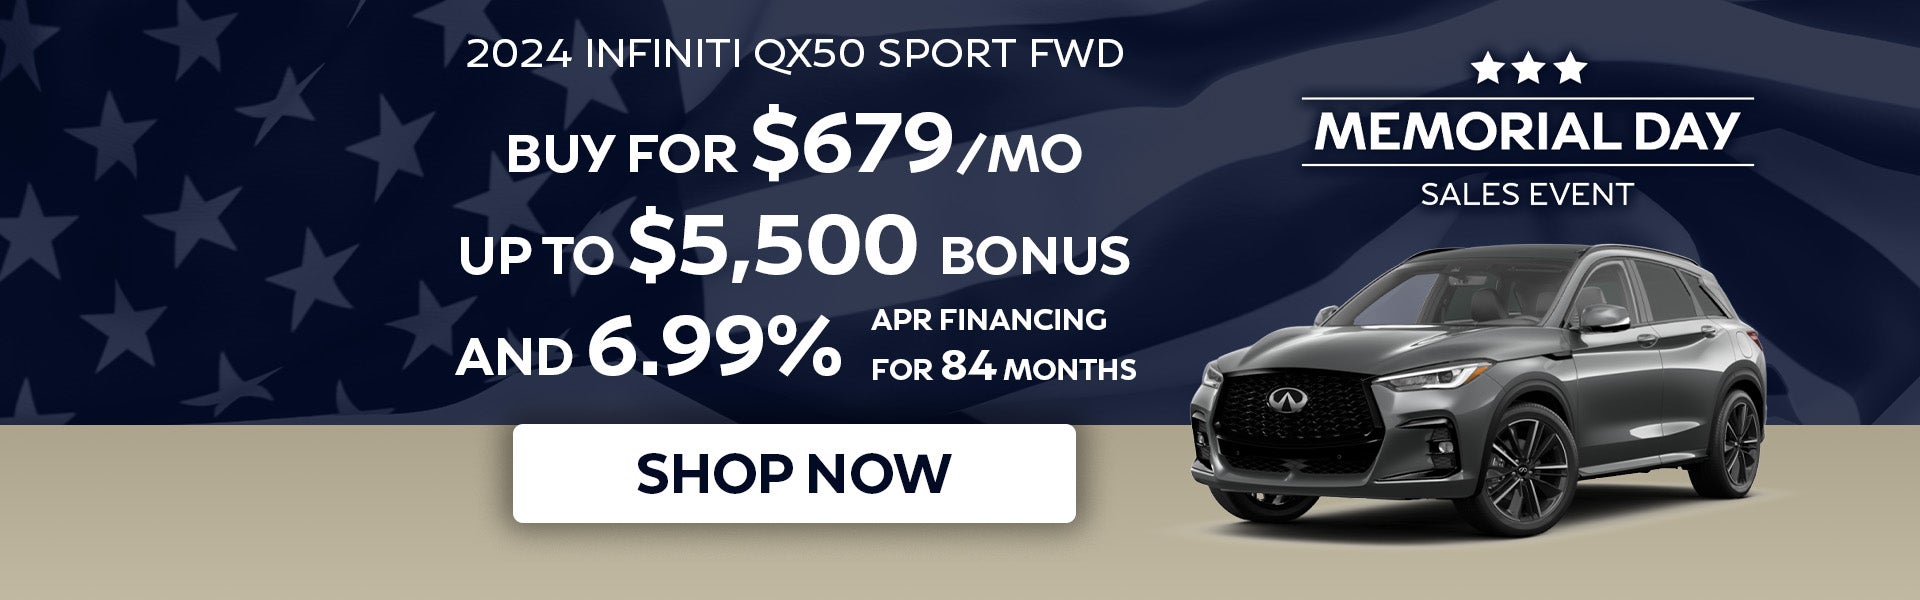 2024 Infiniti QX50 Sport FWD